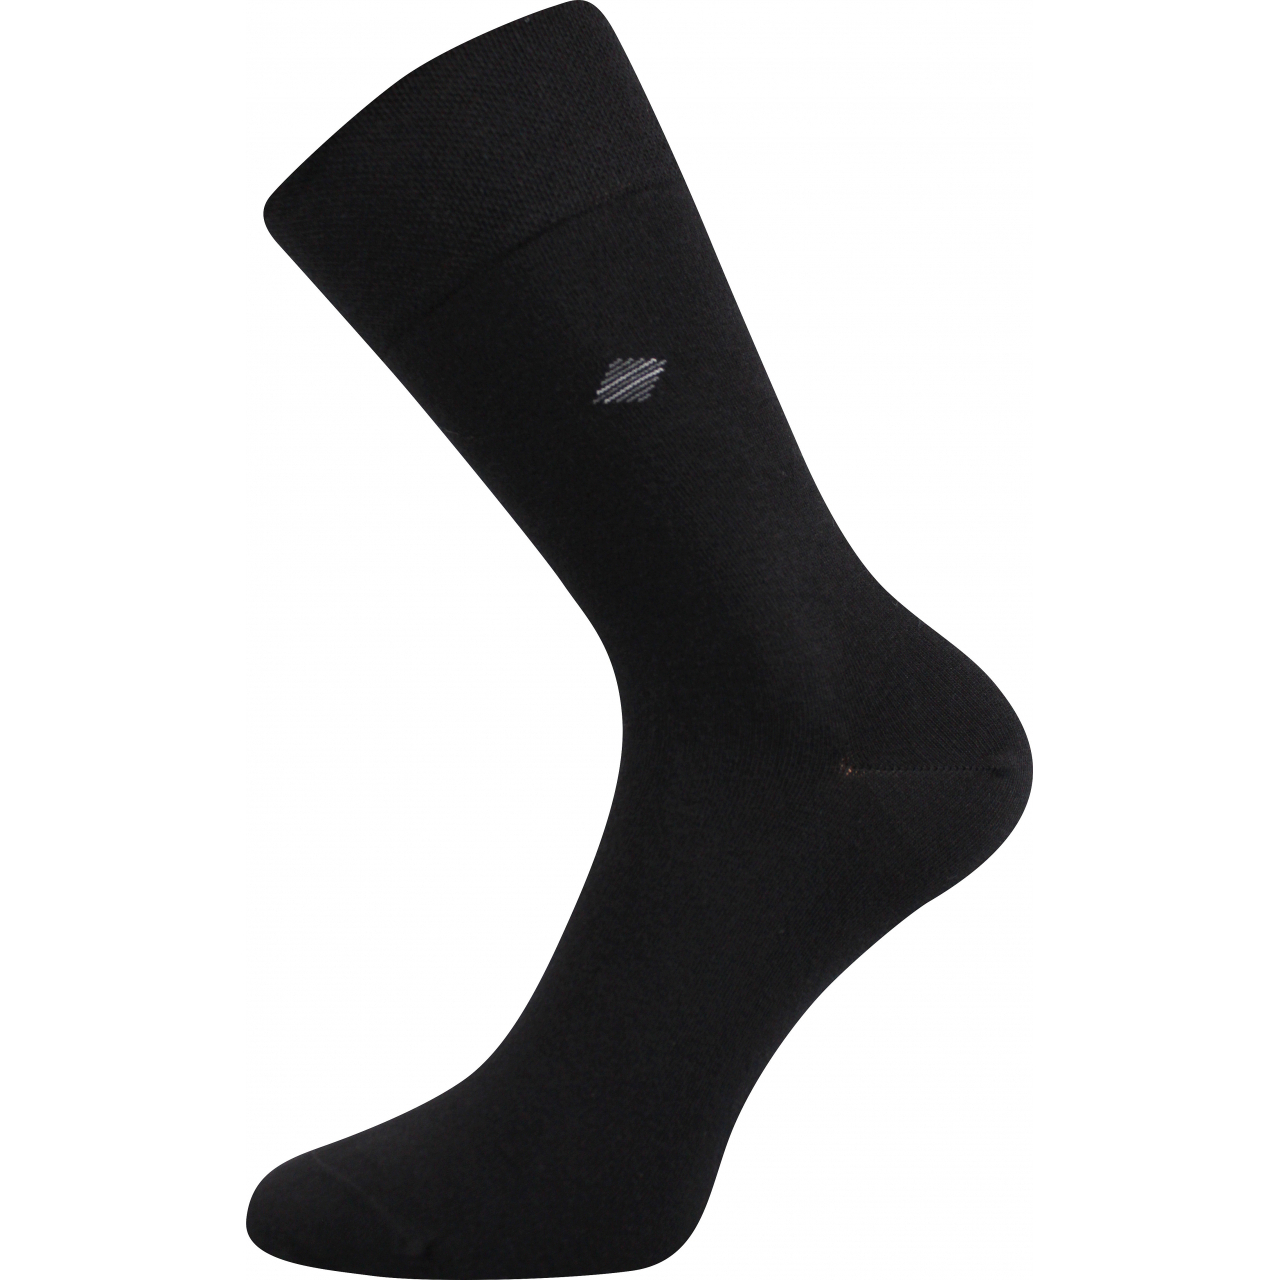 Ponožky pánské společenské Lonka Diagon - černé, 43-46